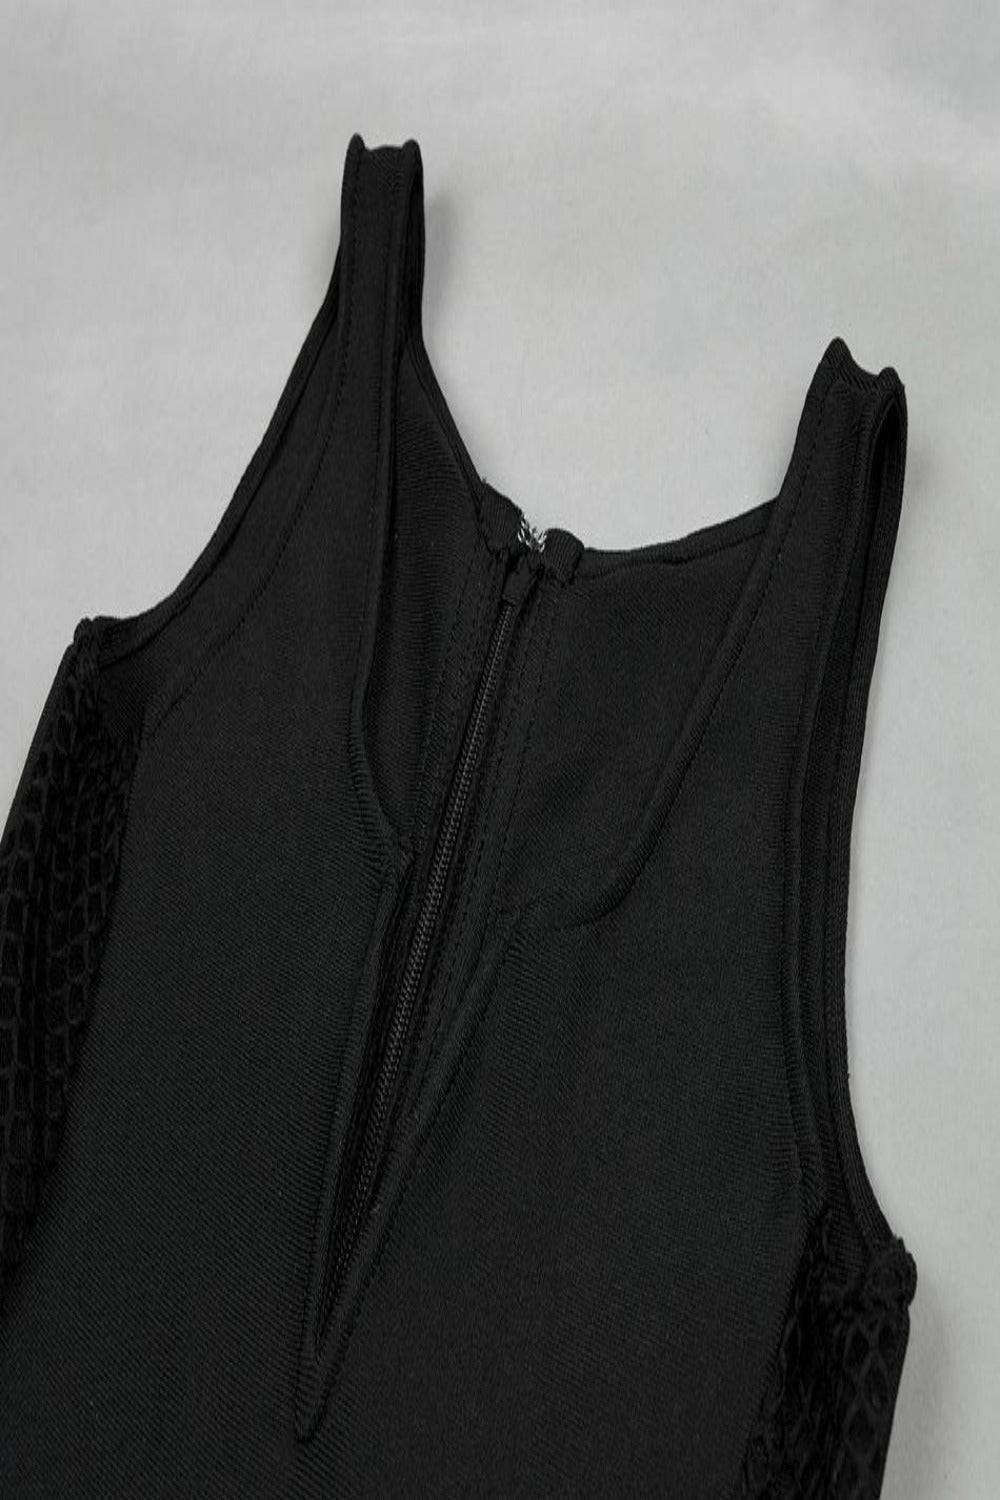 Hanna Black Lace Up Jumpsuit - TGC Boutique - Black Jumpsuits